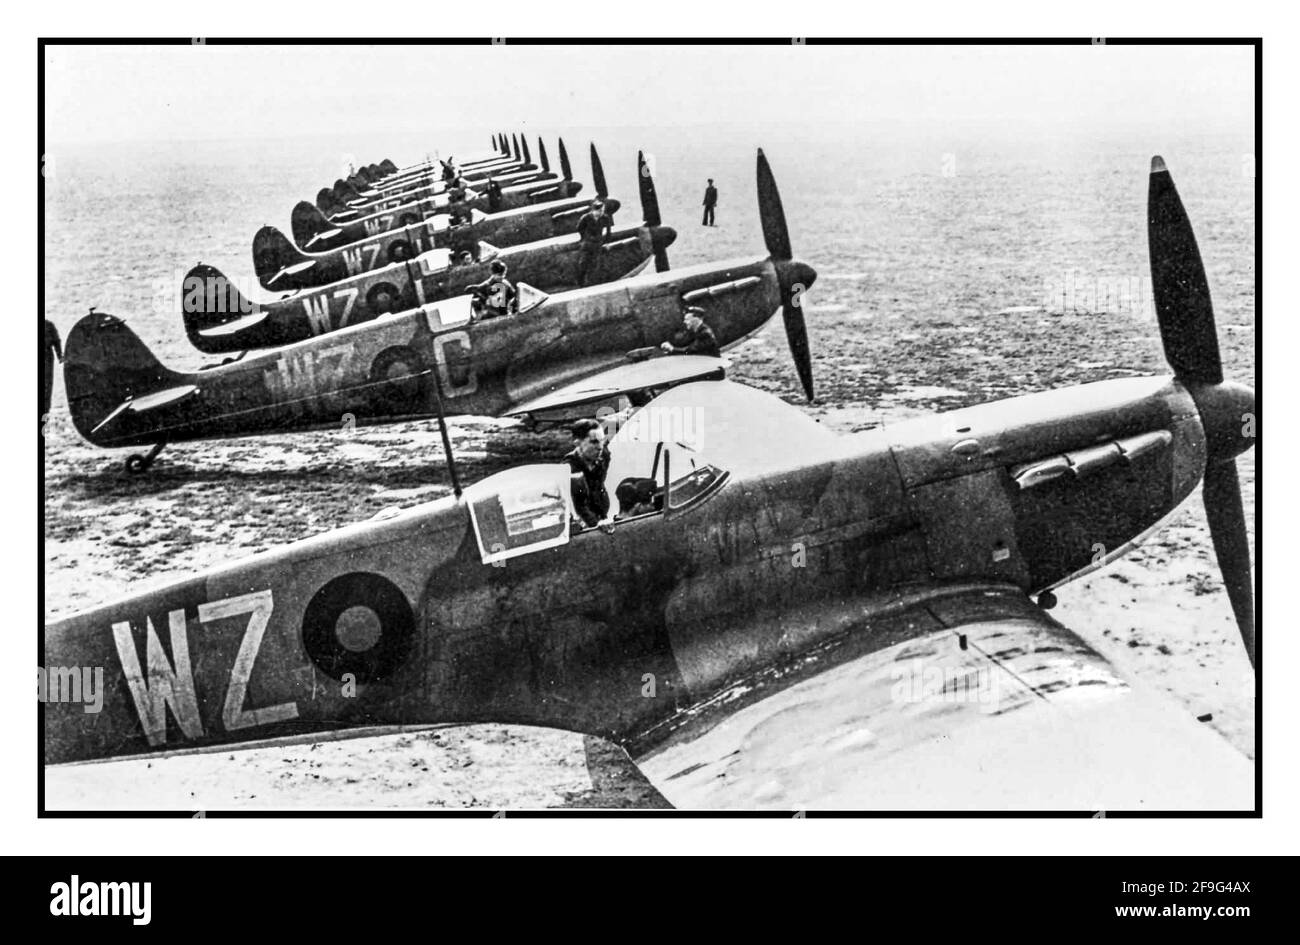 Navigationsleiste Spitfire-Flugzeuge des 2. Weltkriegs, Mk 1. 19 Squadron RAF Duxford UK 1939 Schlacht von Großbritannien. Perfekte symmetrische Linie von Royal Airforce Spitfire Kampfflugzeugen, die sich für den Start bereit machen, um Großbritannien gegen die Terroranschläge des Zweiten Weltkriegs der deutschen Nazi-Luftwaffe zu verteidigen Stockfoto